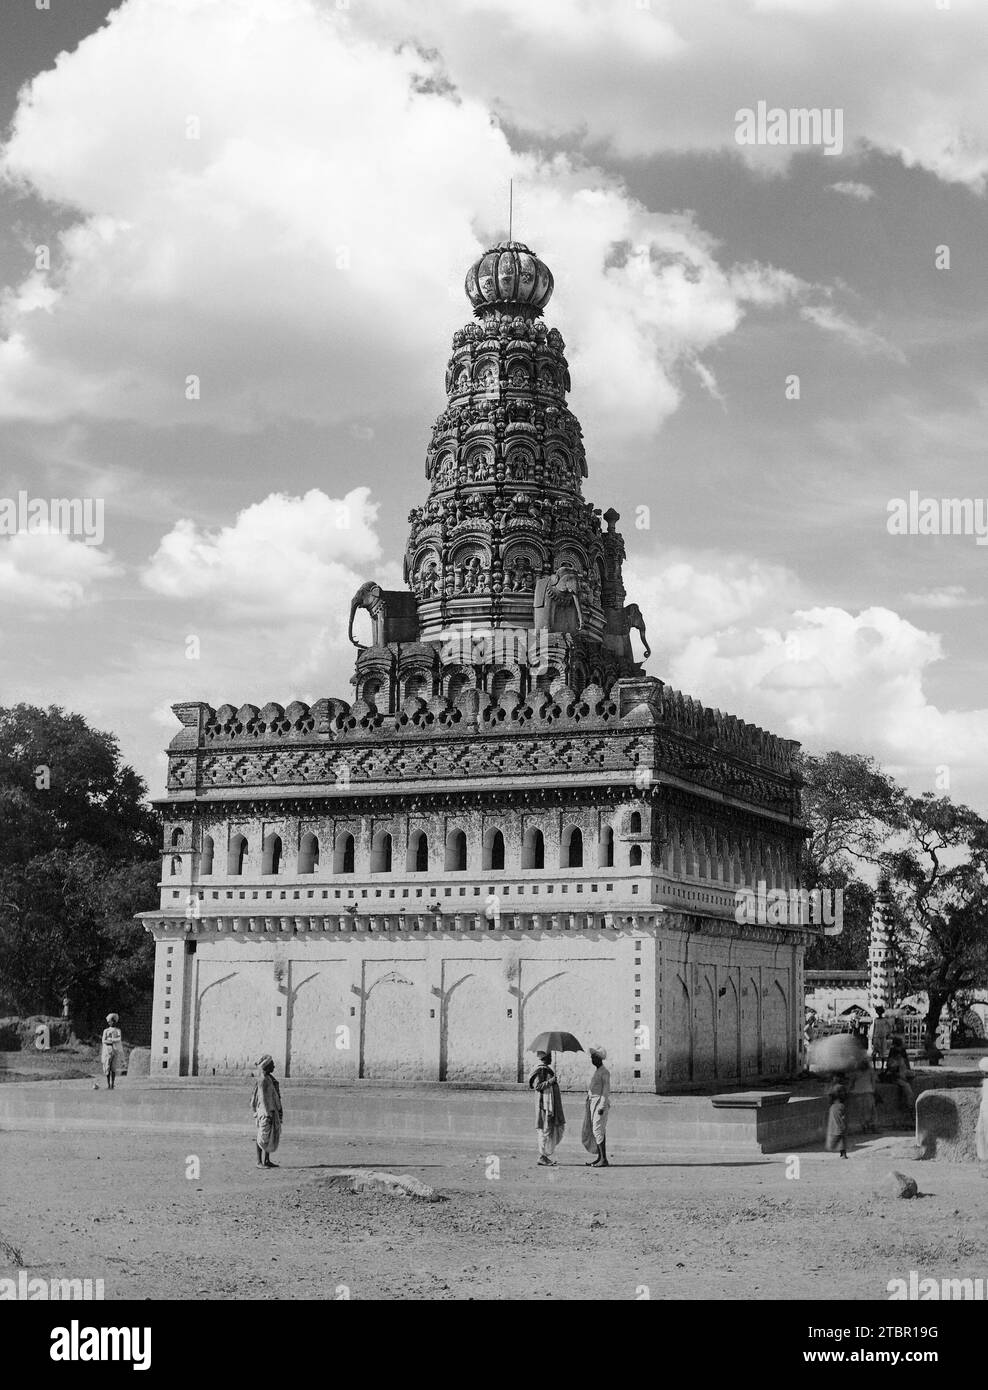 Vue sur le temple Sharana Basaveshwara, un sanctuaire hindou avec un dôme en forme de cloche et une base carrée. Le dôme est également décoré de sculptures ornées Banque D'Images